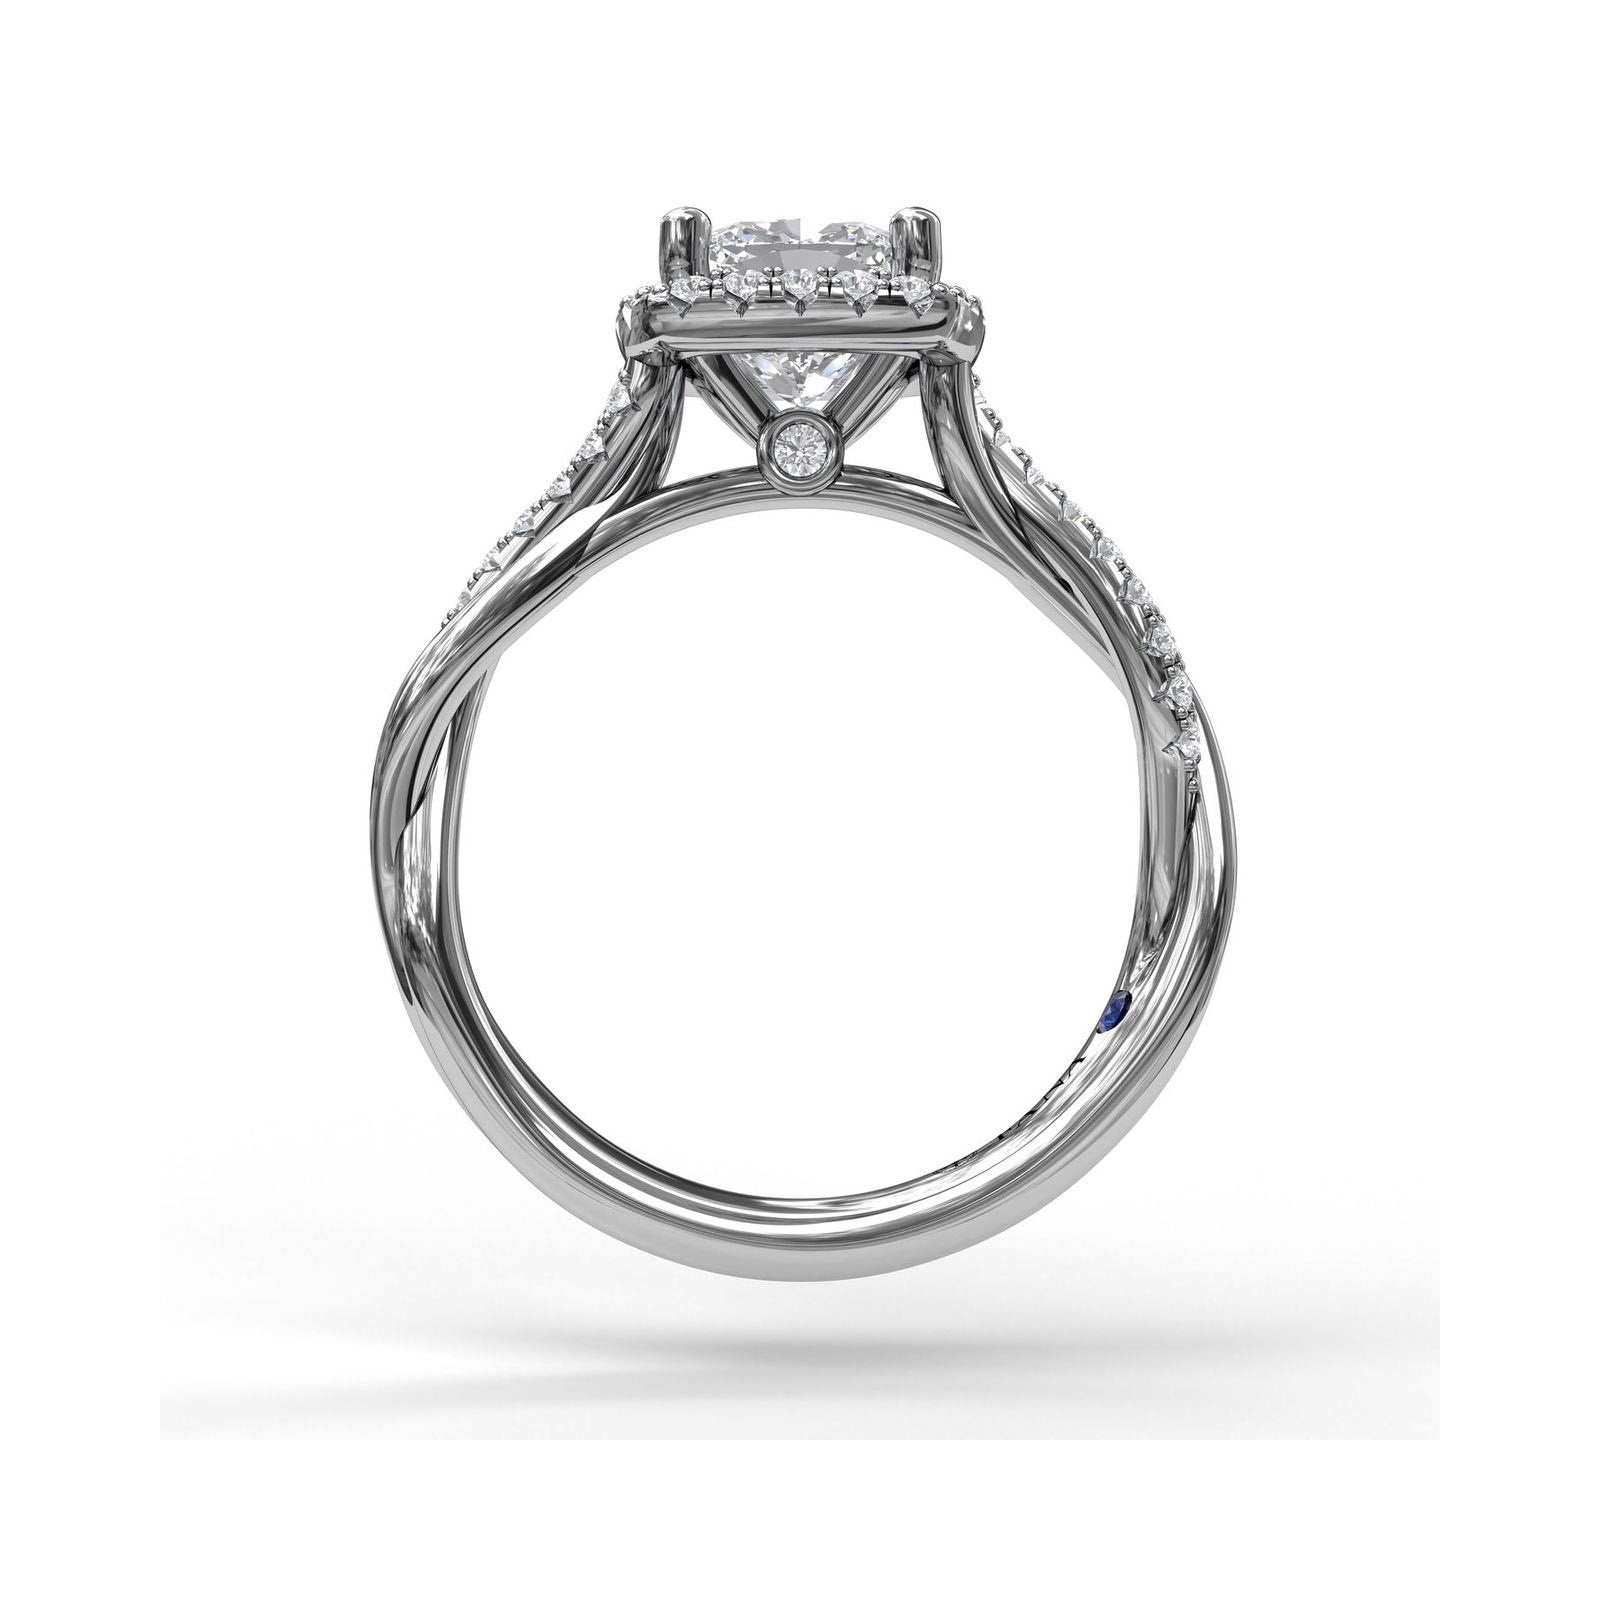 FANA Cushion Diamond Halo Engagement Ring